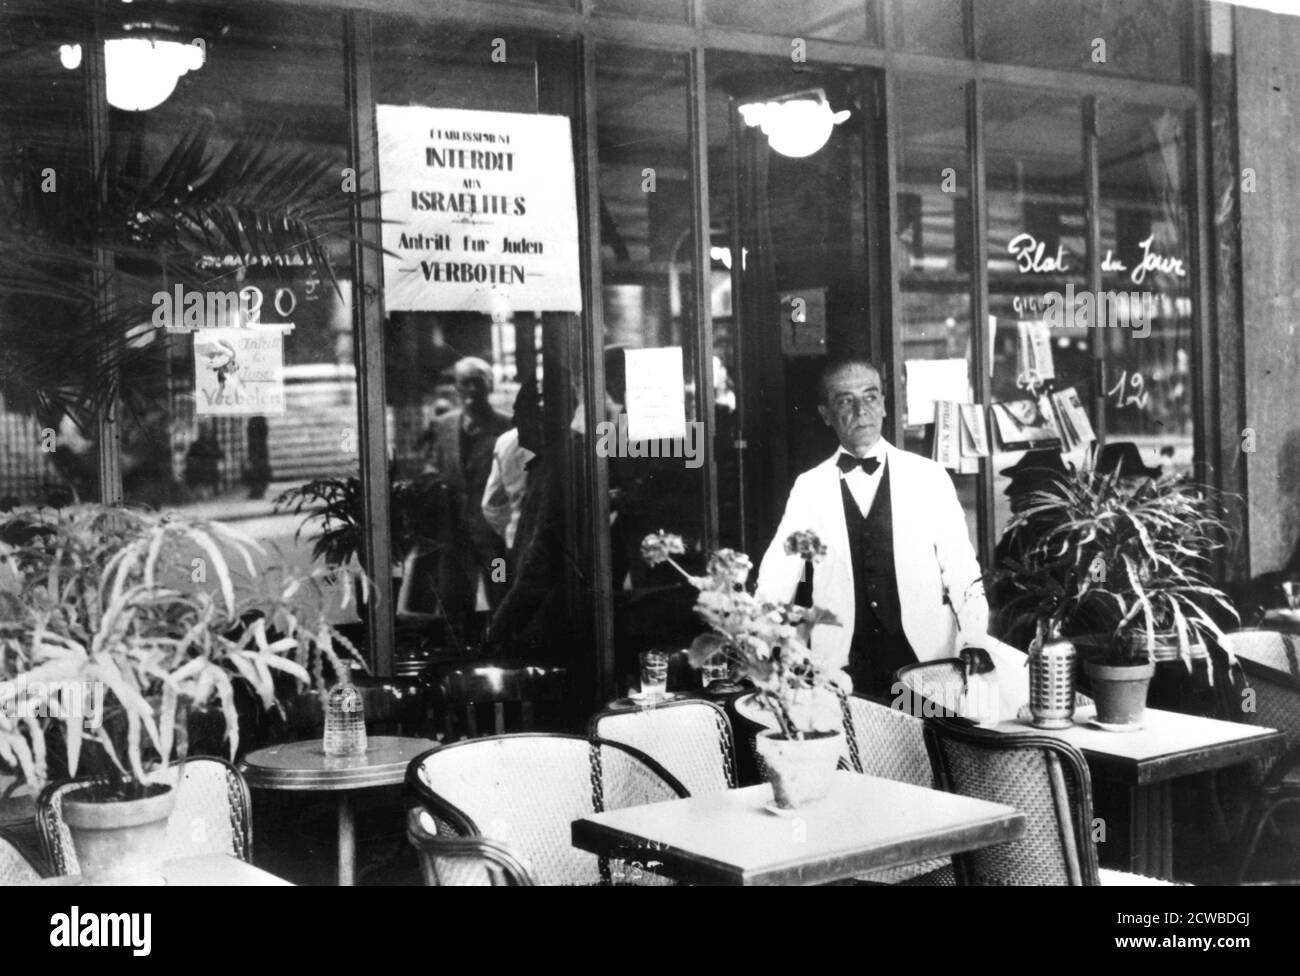 Avis dans une fenêtre de restaurant interdisant l'entrée des juifs, Paris occupé par l'Allemagne, juillet 1940. La vie des juifs français était répressive sous l'occupation nazie. Les collaborateurs de la partie occupée du pays et de la zone contrôlée par le régime de Vichy ont coopéré avec enthousiasme à la persécution. Le photographe est inconnu. Banque D'Images